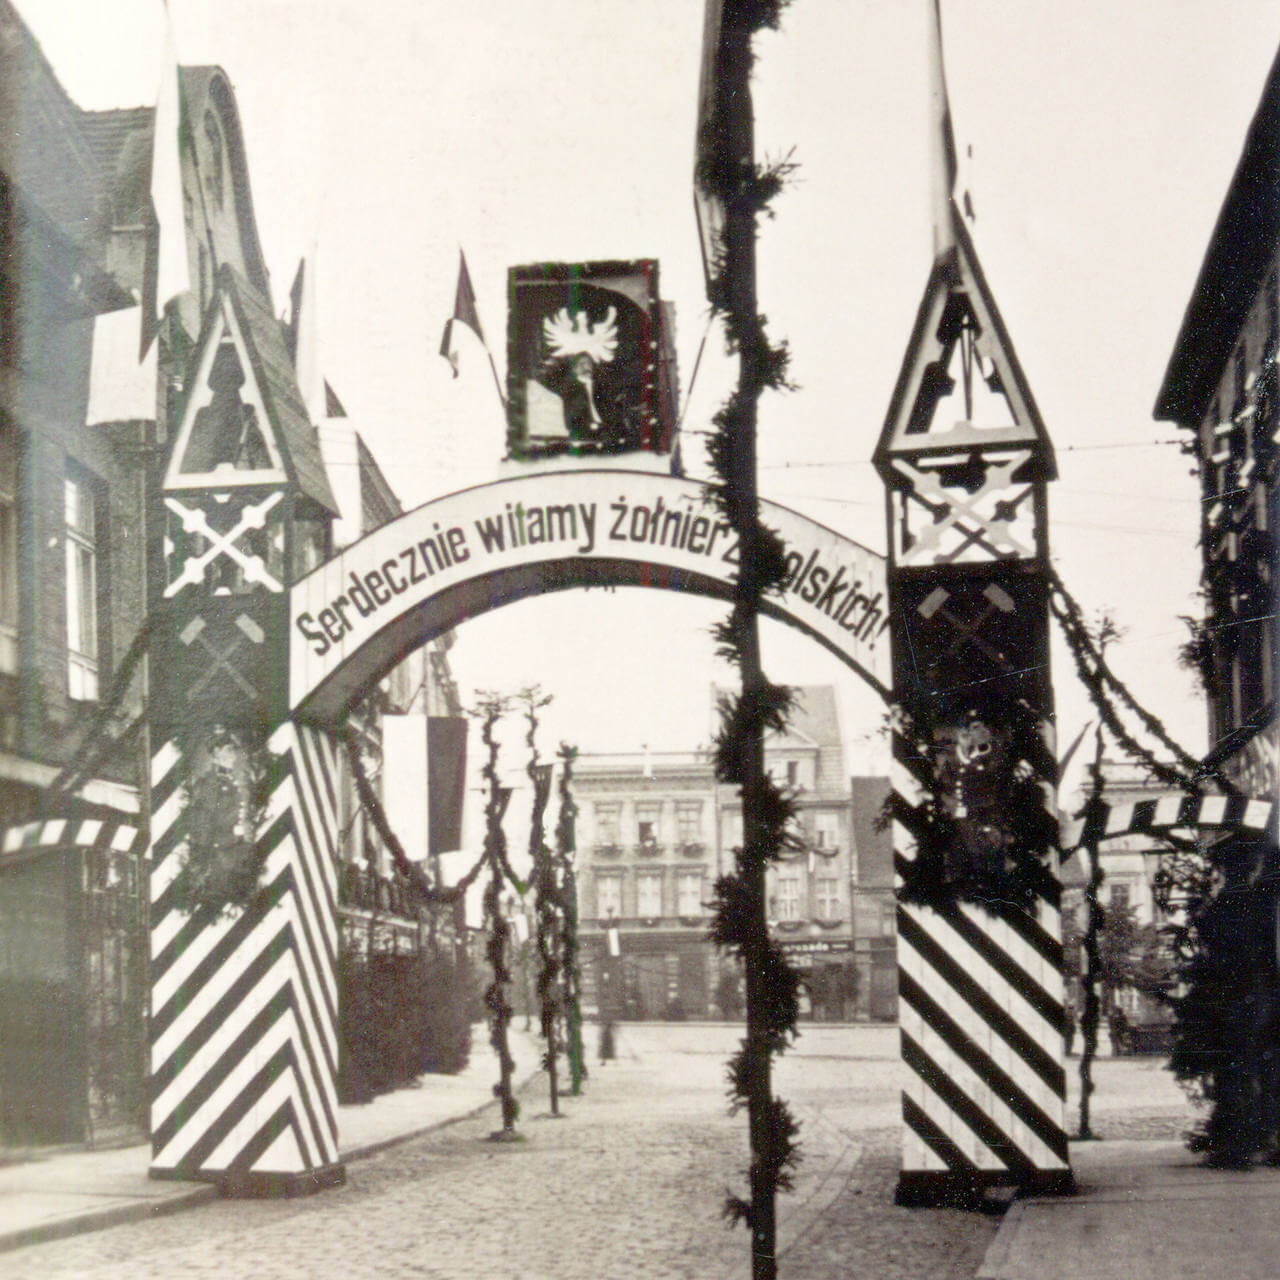 Brama powitalna ustawiona u wylotu ulicy Sobieskiego. Fotokopia Marek Szołtysek